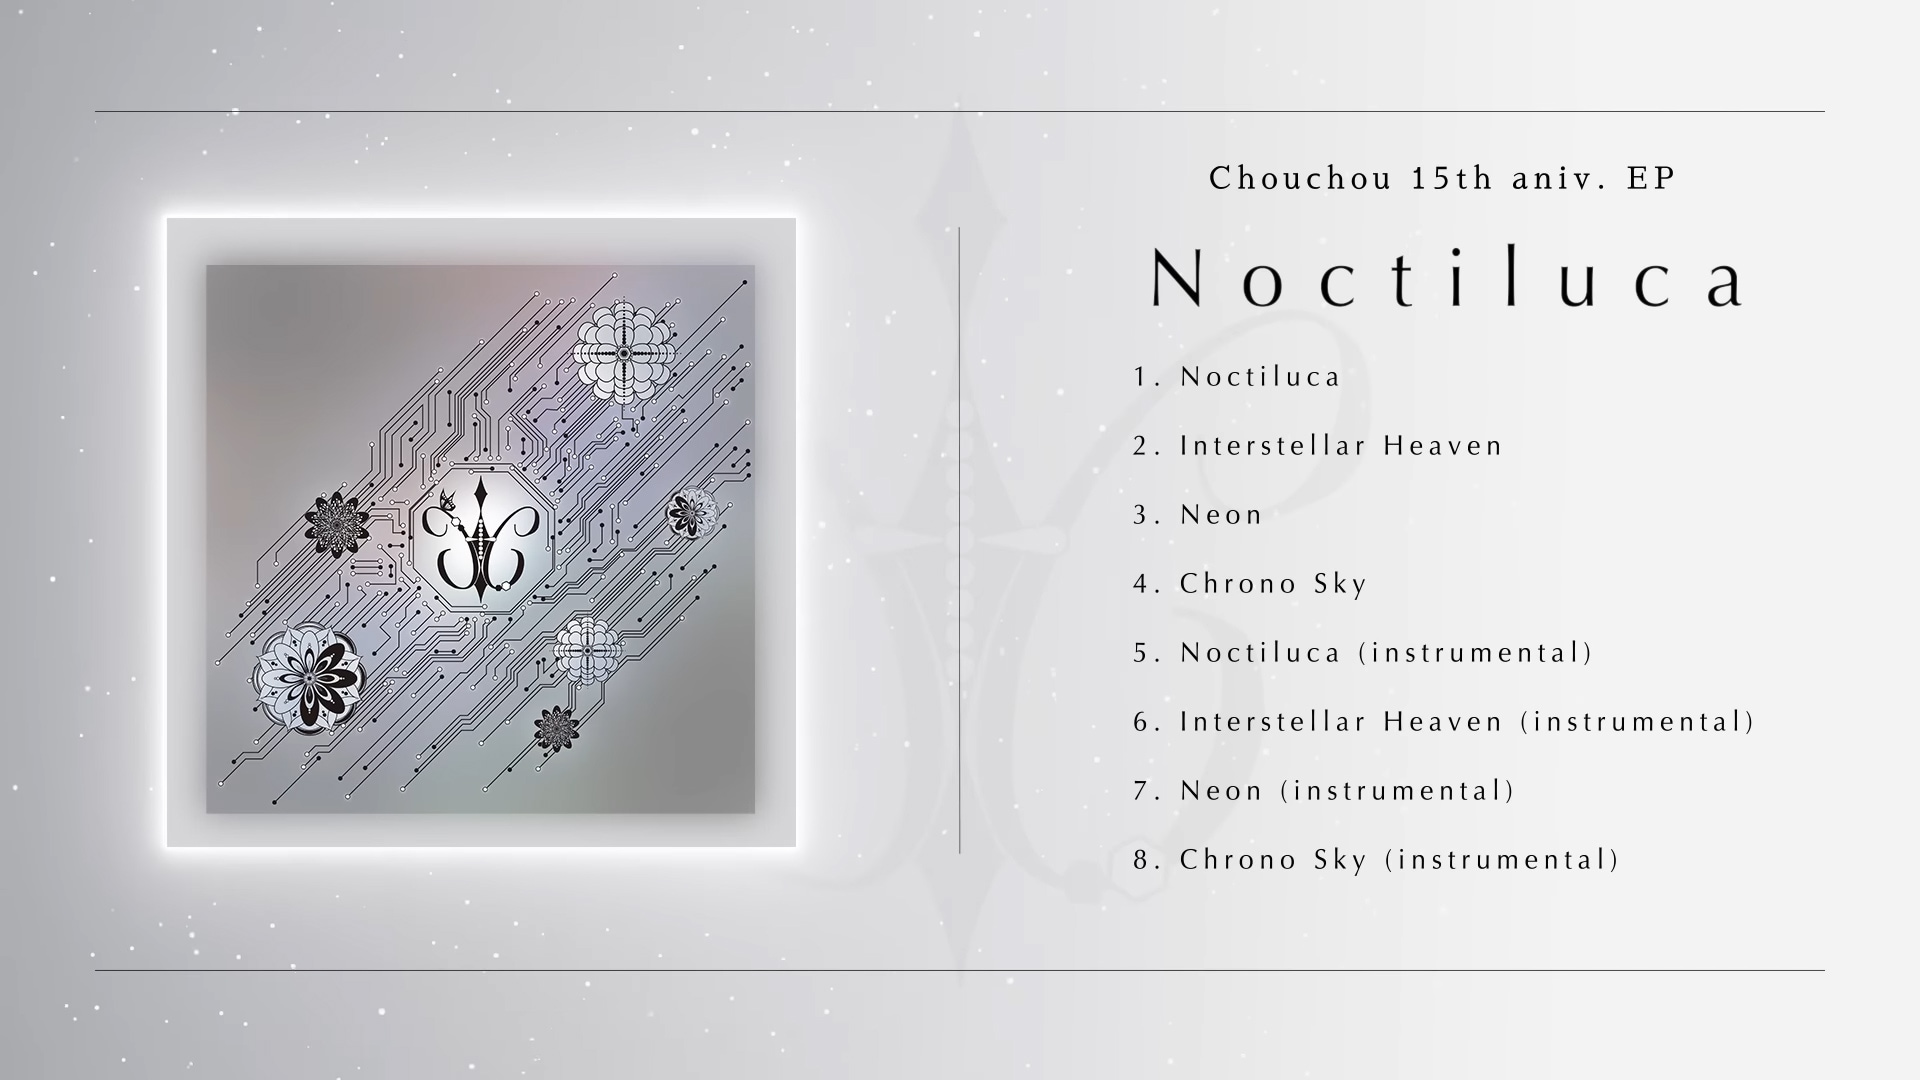 15th Anniversary EP Album "Noctiluca"